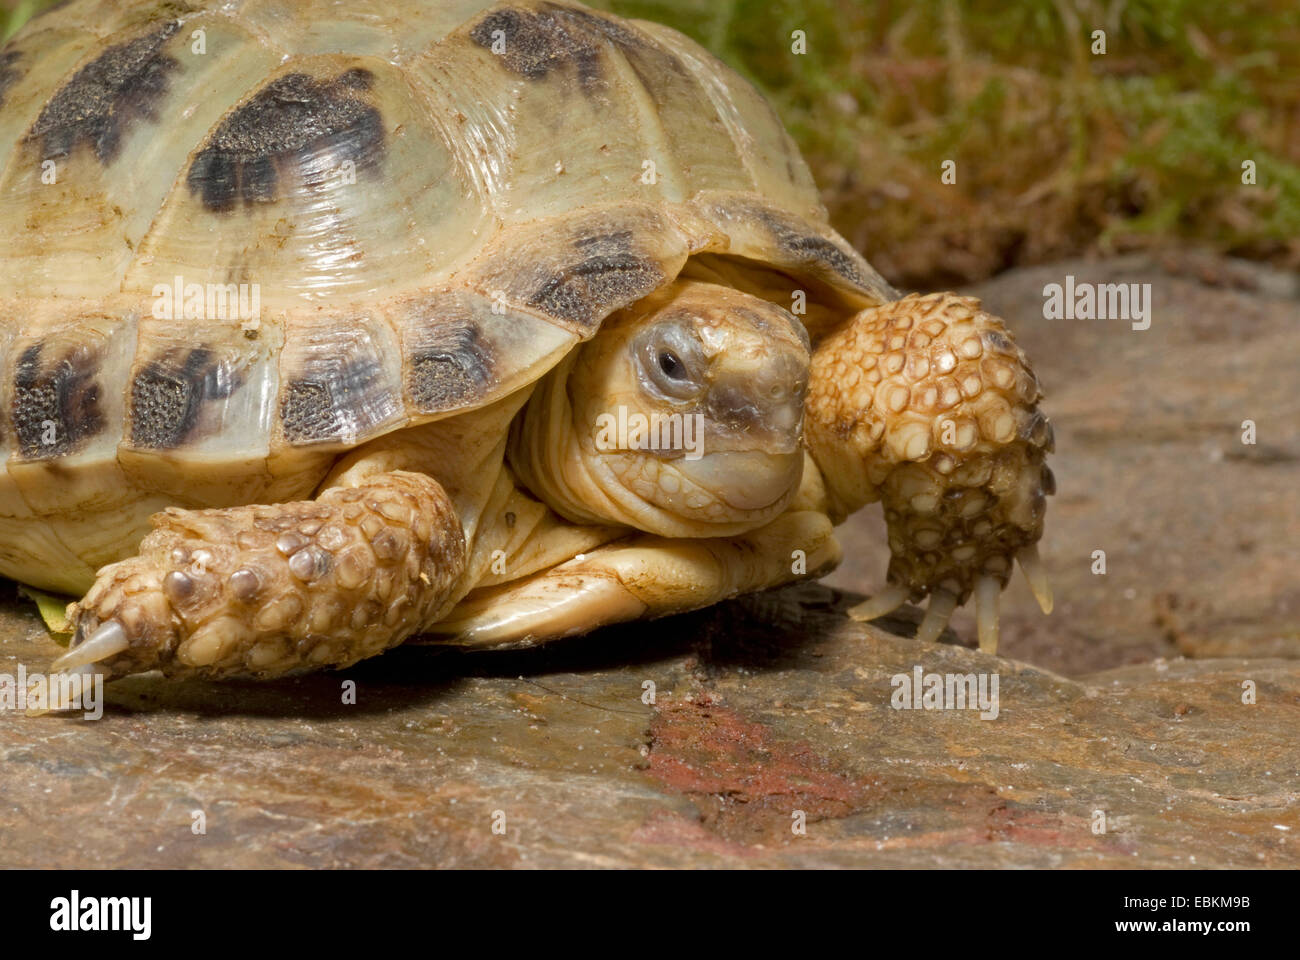 La tortuga de Horsfield, cuatro dedos cada tortuga, Asia Central (tortuga Agrionemys horsfieldi, Testudo horsfieldii), recostada sobre una roca Foto de stock